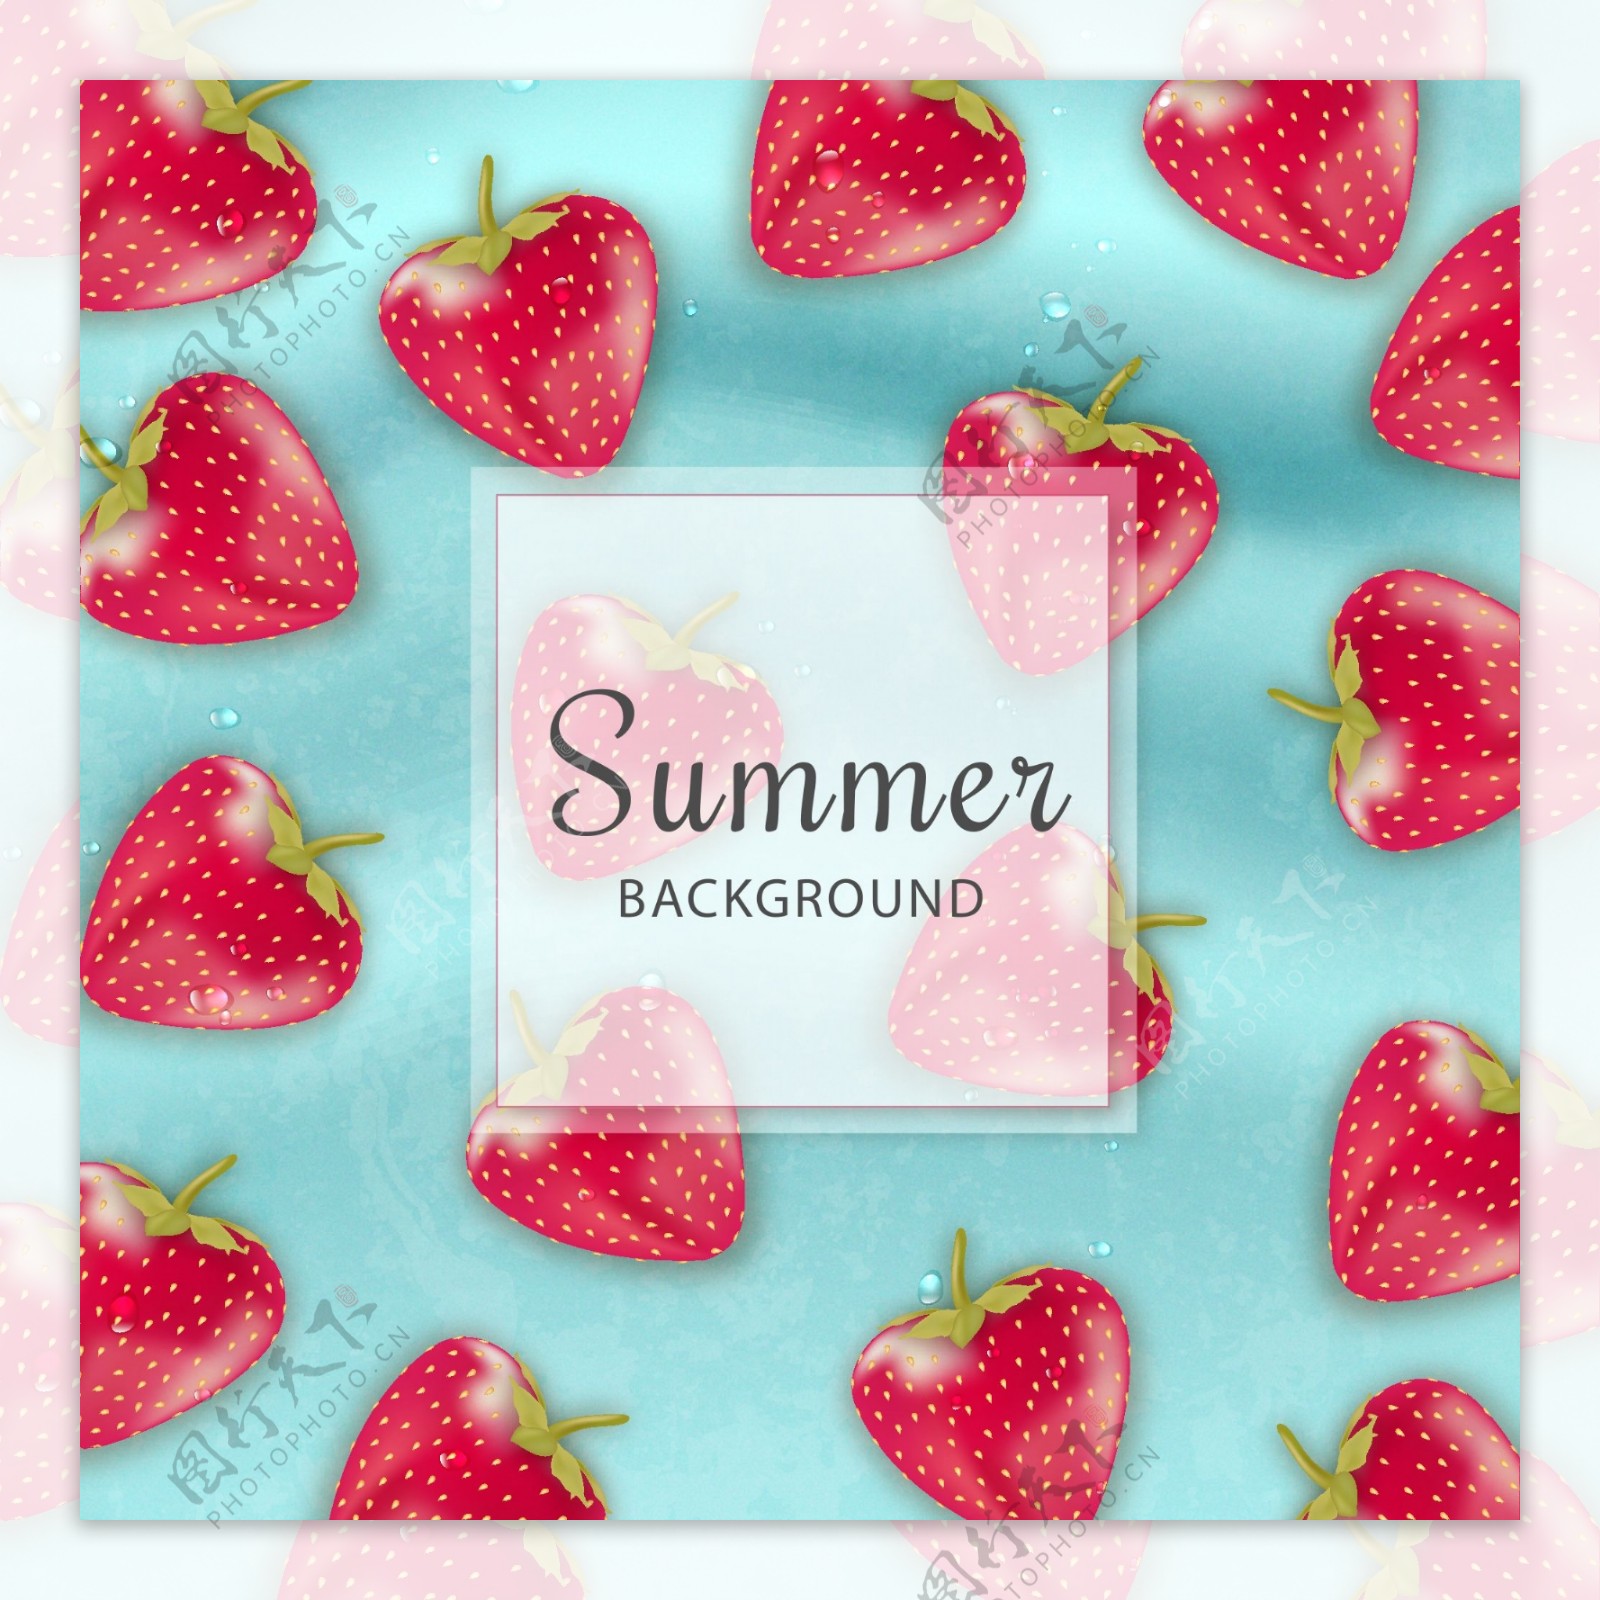 写实风格夏天草莓海报